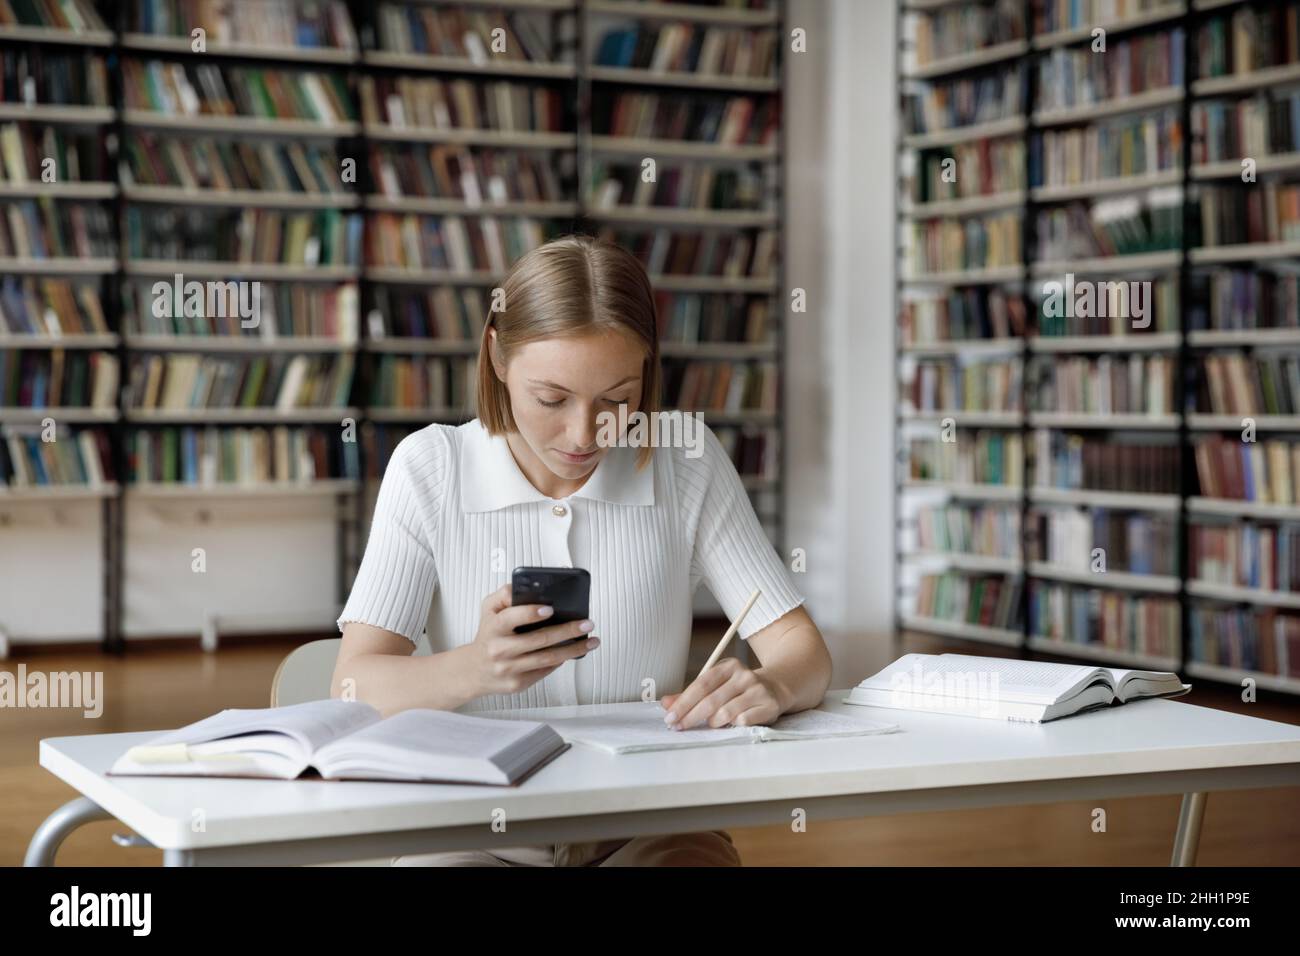 Une jeune fille étudiante diplômée et travailleur concentrée faisant ses devoirs à l'étude Banque D'Images